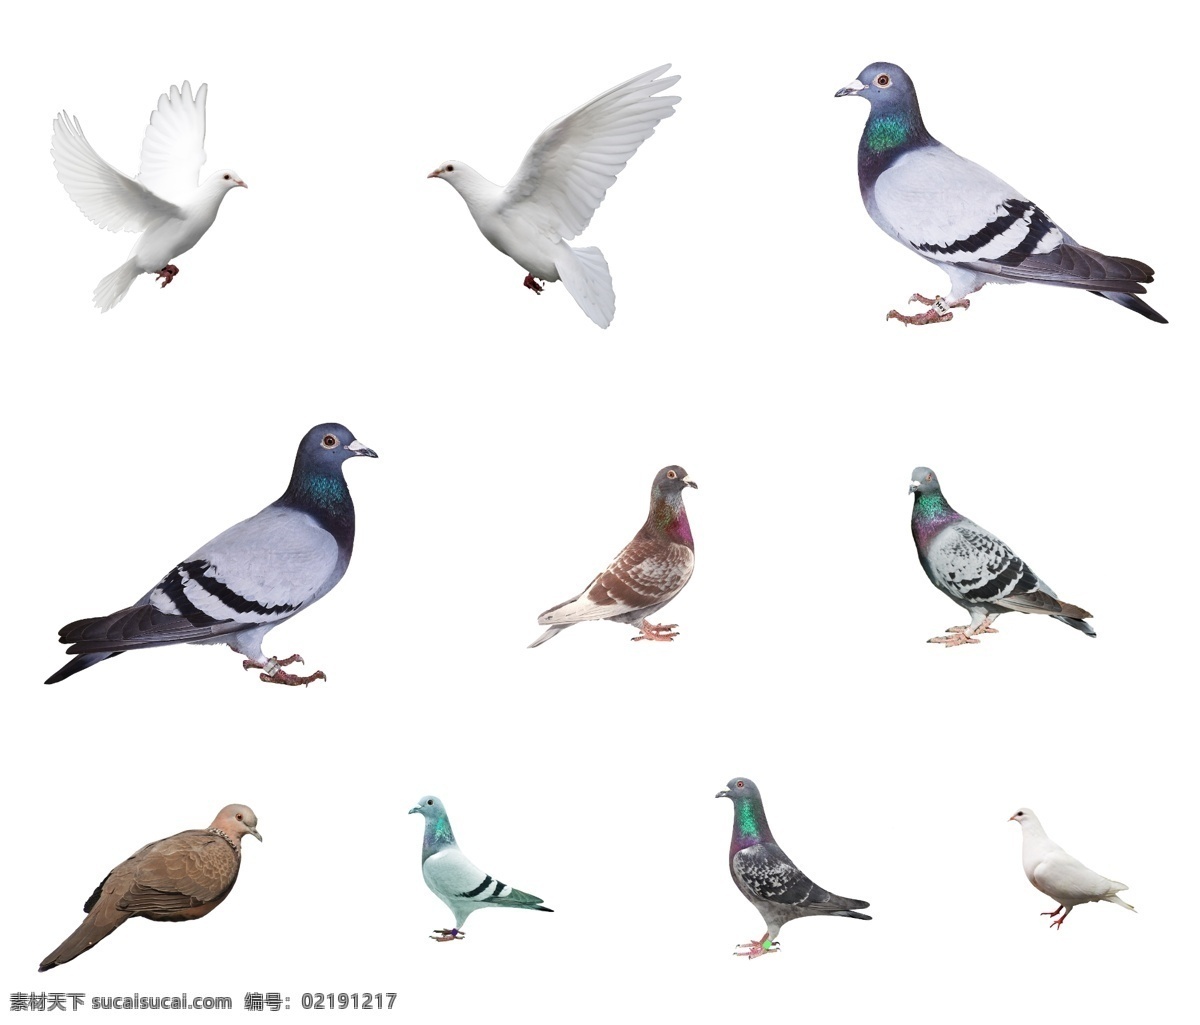 鸽子 分层 素材图片 鸽子分层素材 分层素材 家禽 飞鸽 动物